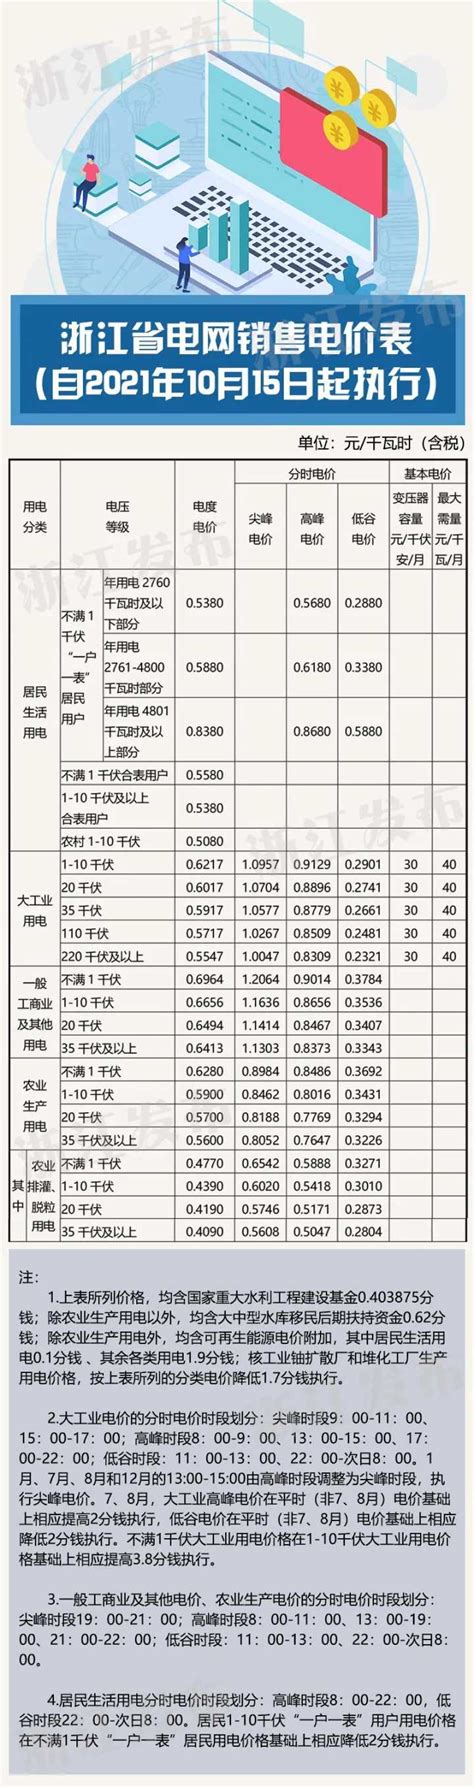 上海大工业用电价格将下调(2021年1月1日起执行)- 上海本地宝